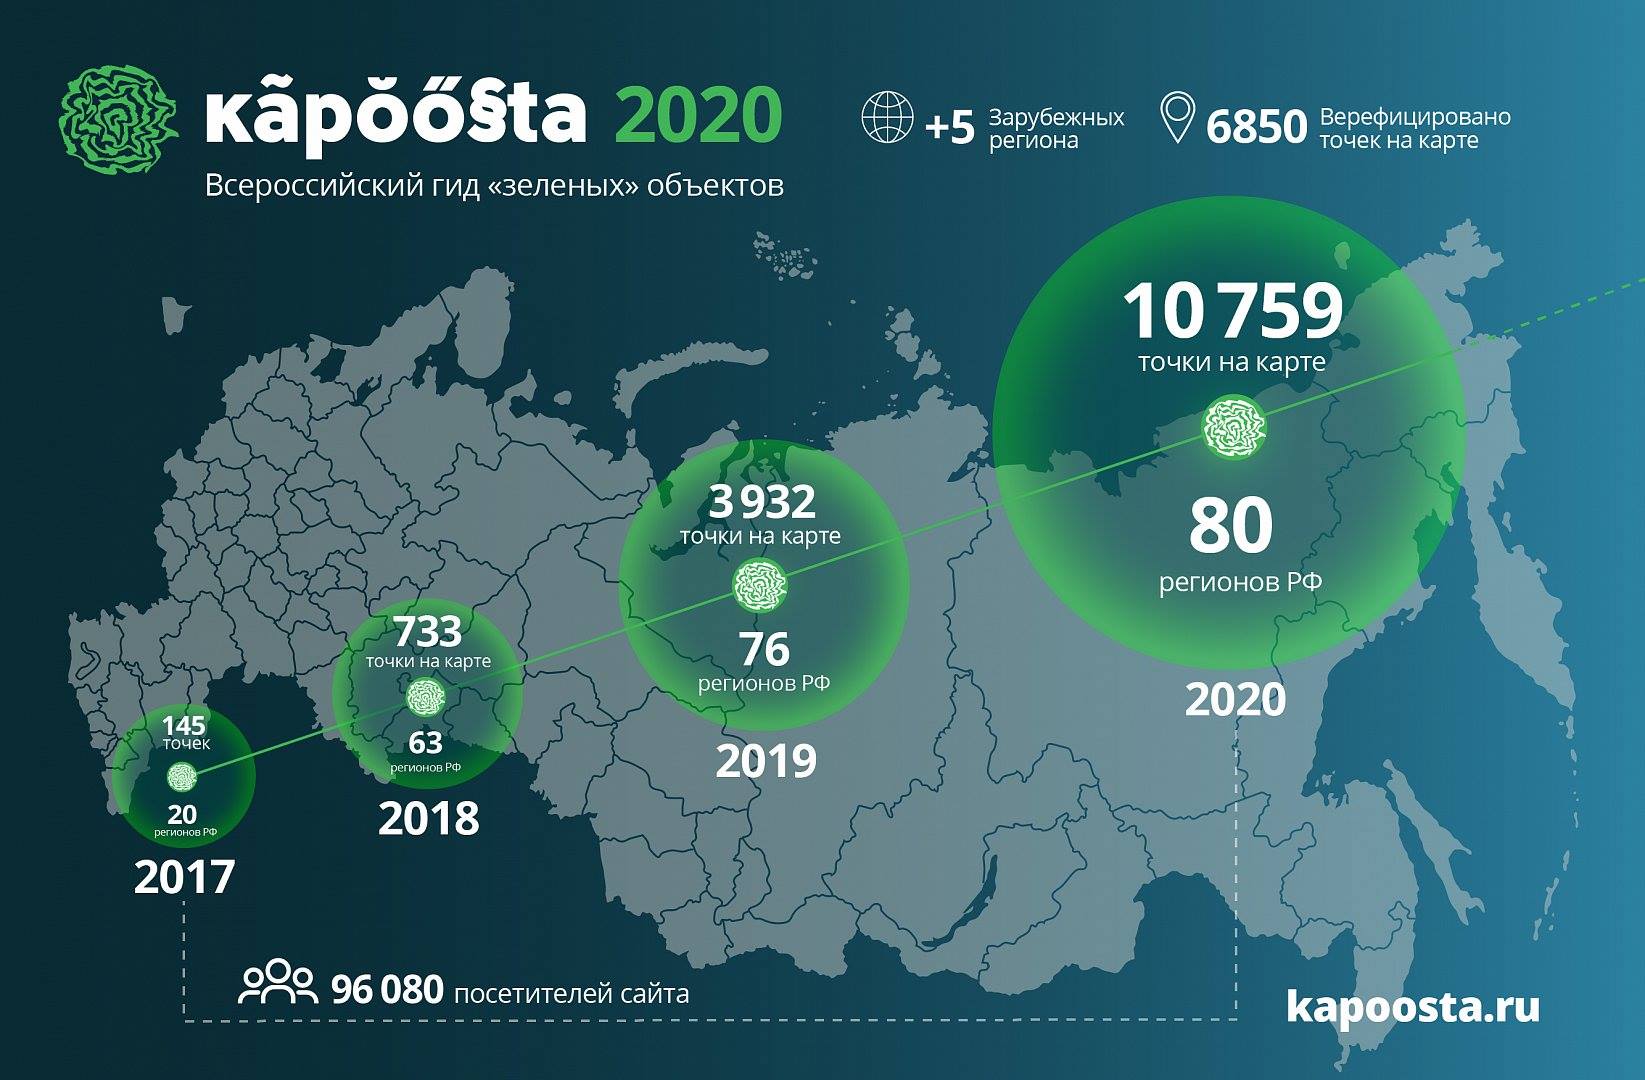 Карта Kapoosta.ru объединила более 10000 объектов “зеленого” бизнеса России - фото 1